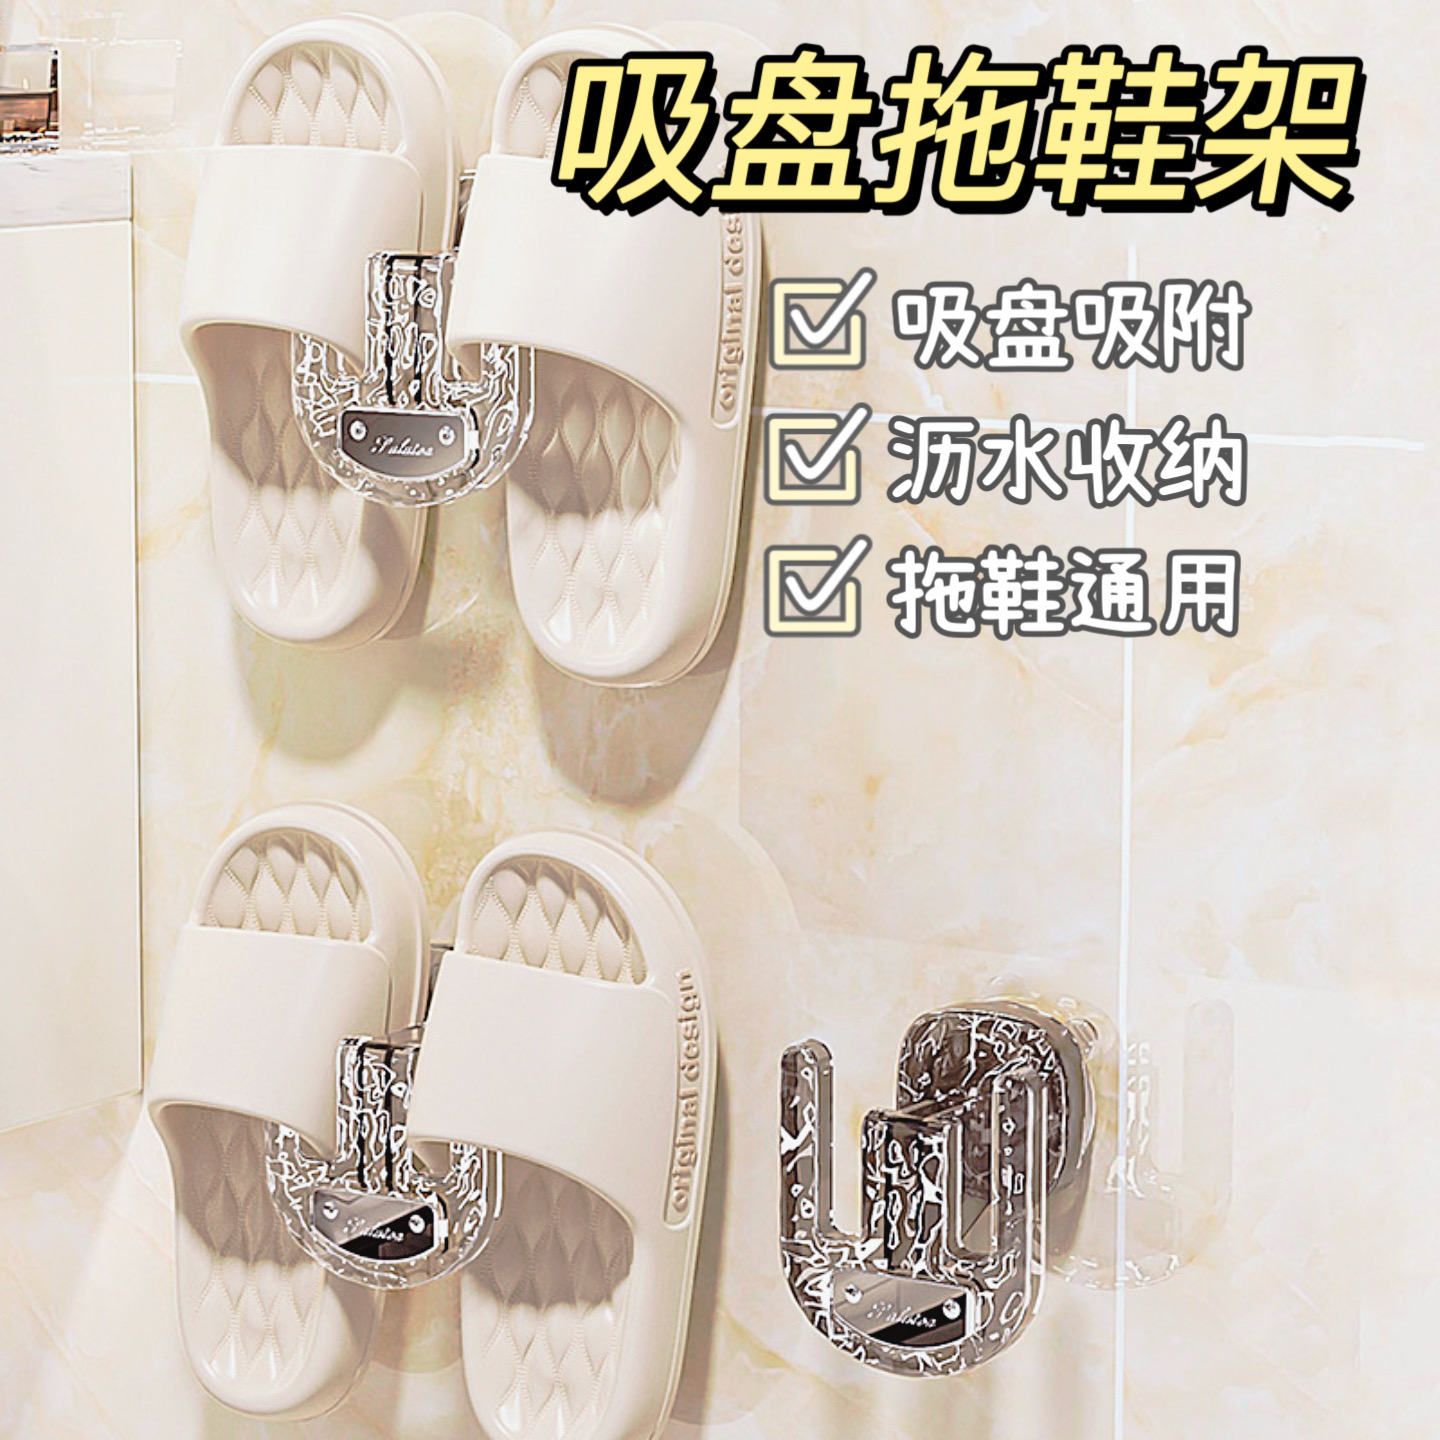 吸盘拖鞋挂架浴室免打孔卫生间壁挂式拖鞋架墙上空间利用神器挂钩